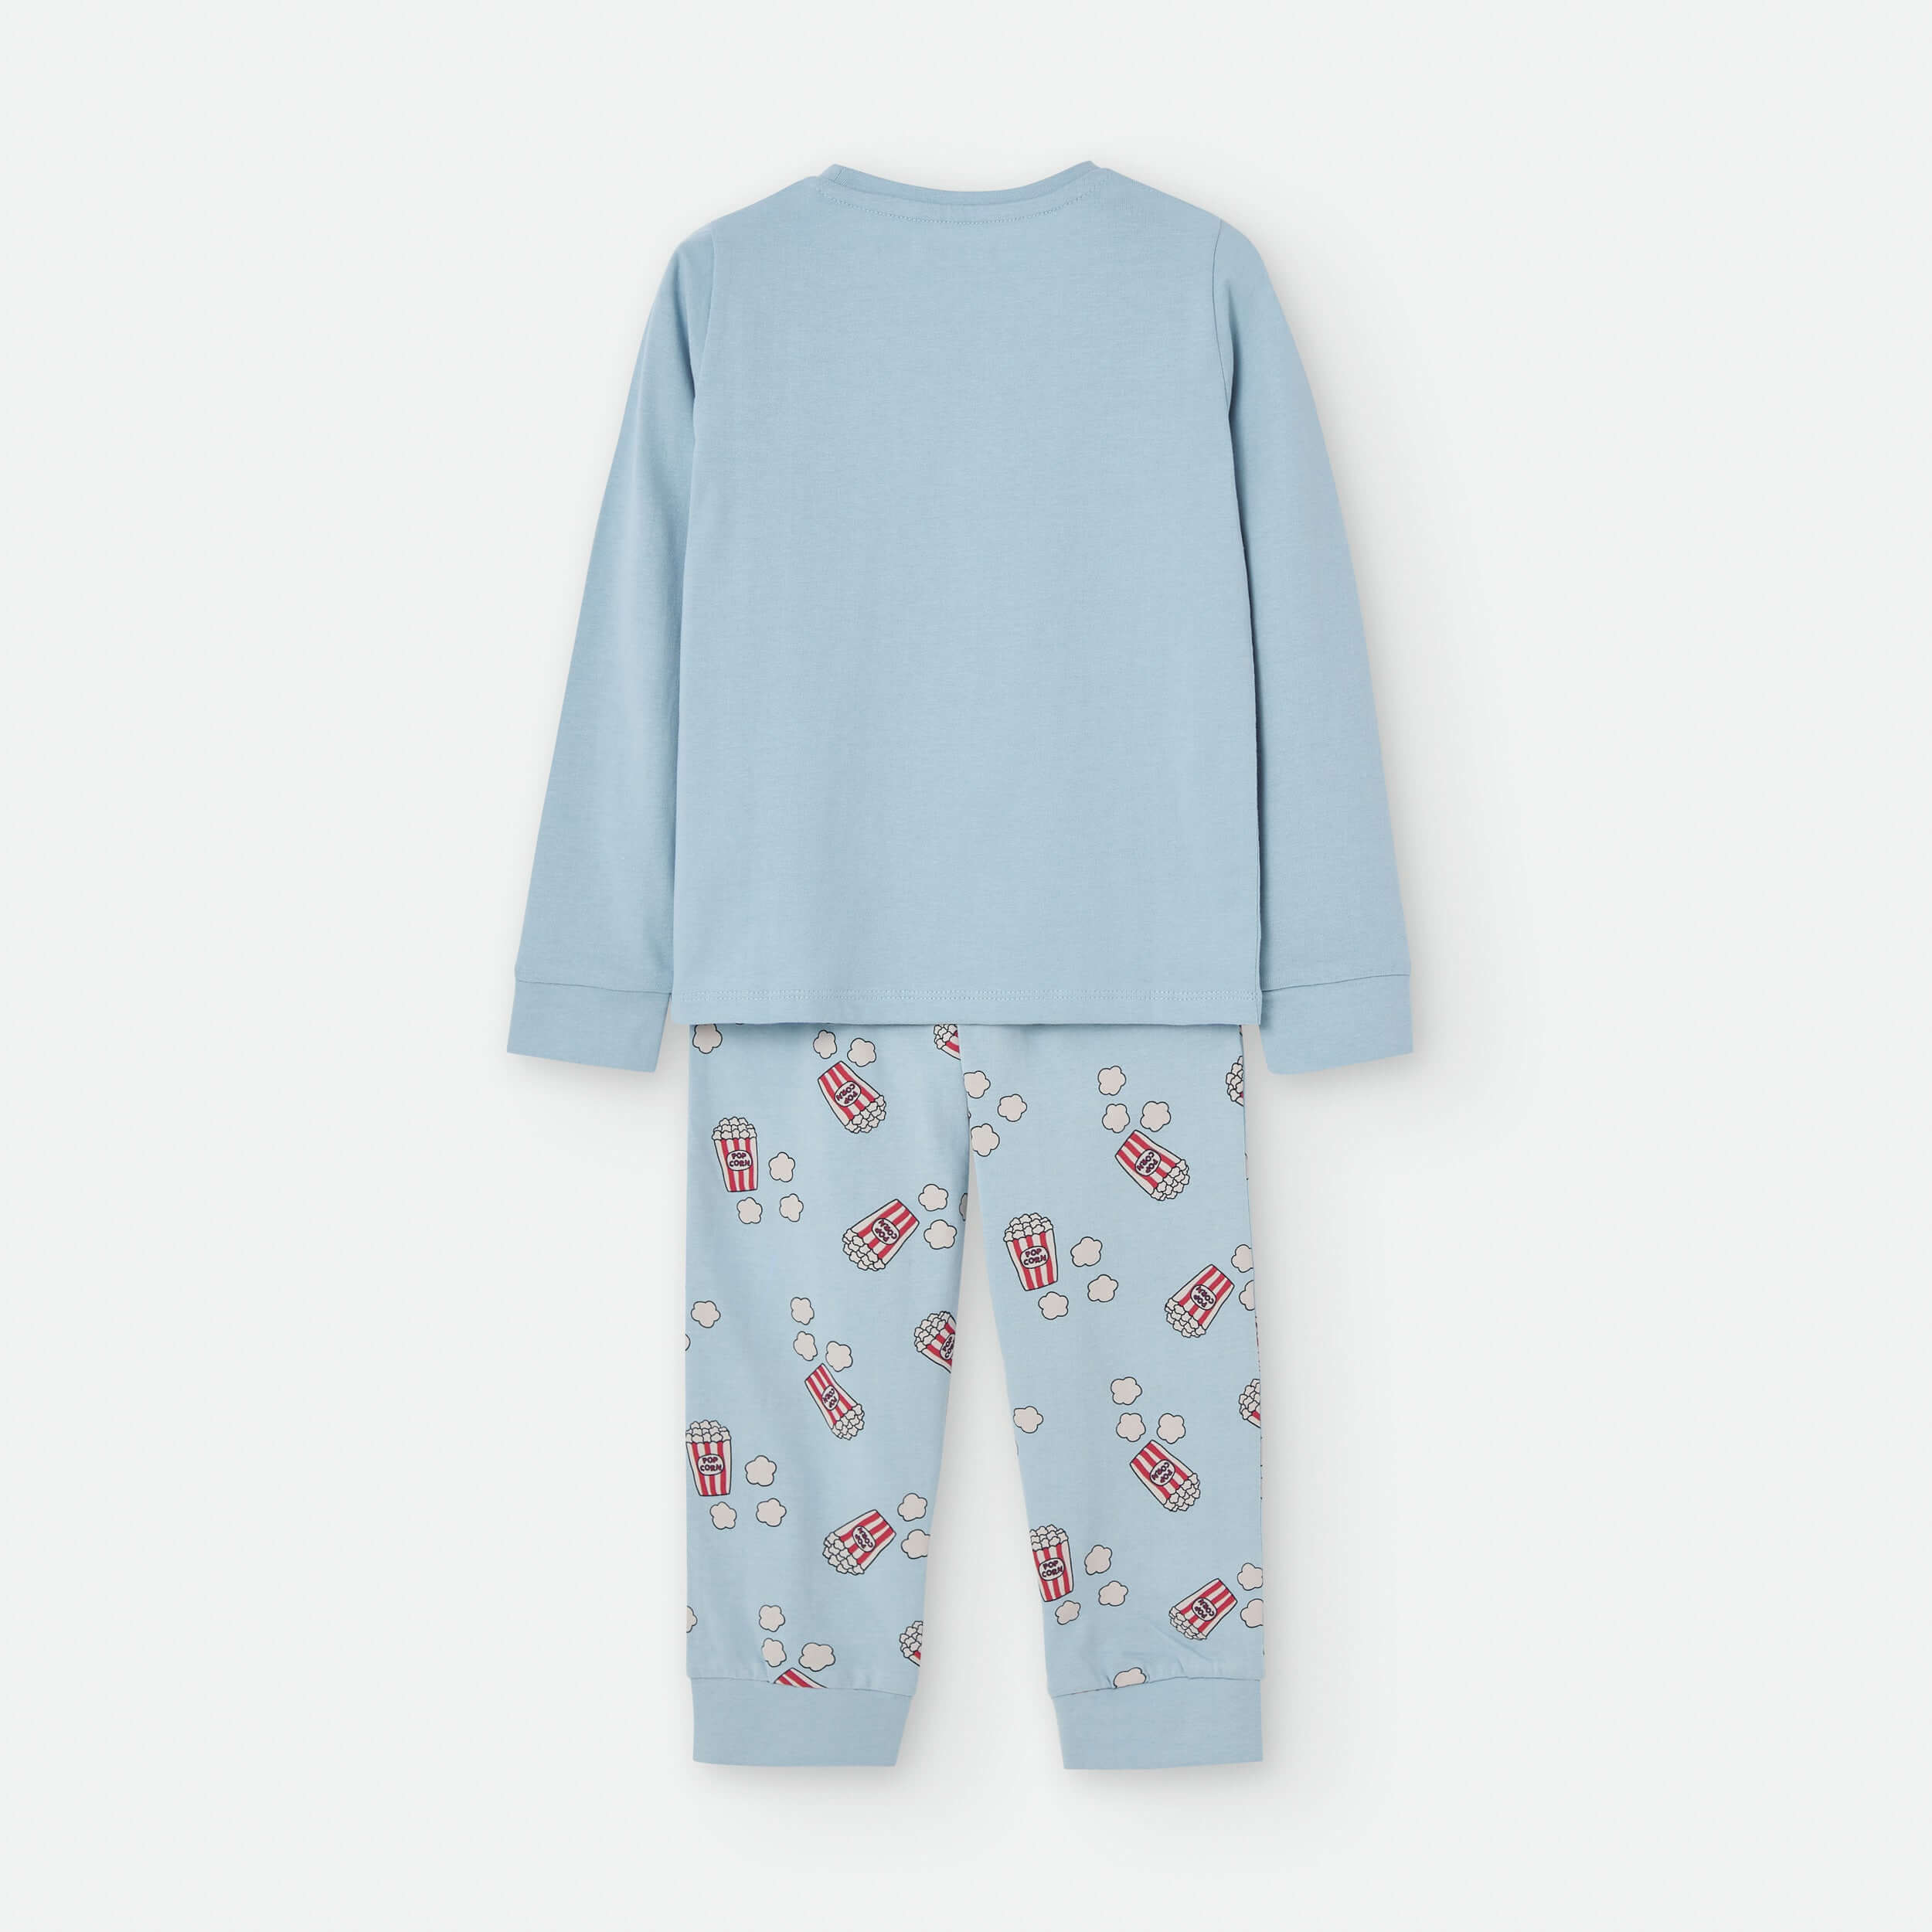 Pijama infantil invierno azul celeste Waterlemon